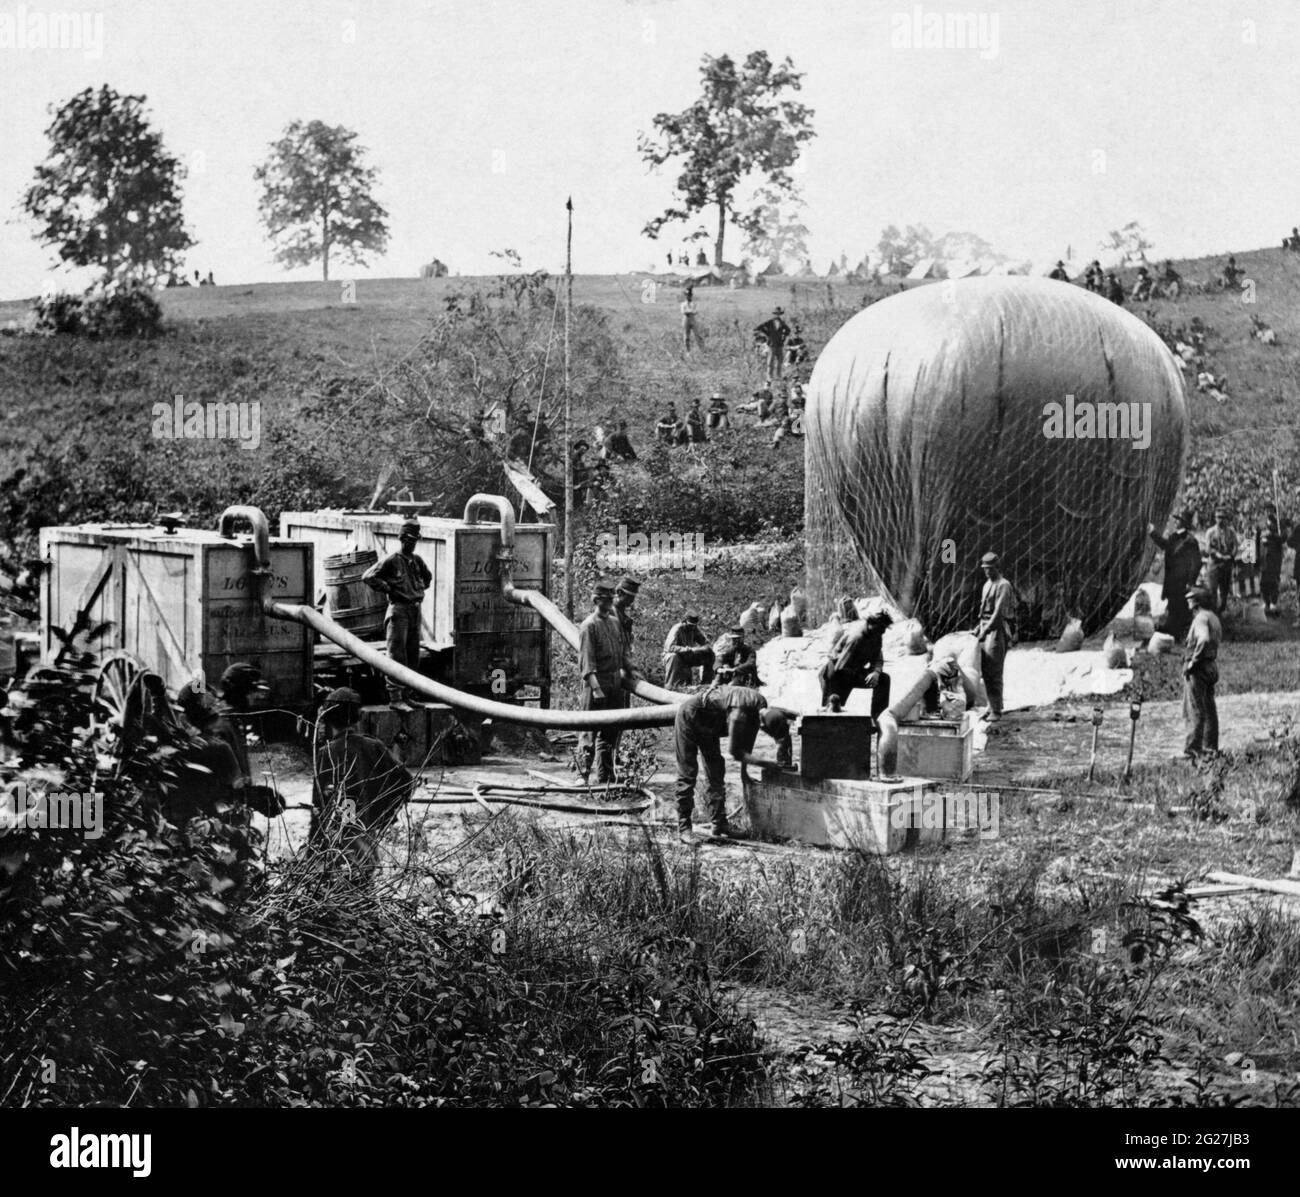 La inflación del globo de aire de gas hidrógeno Intrepid, utilizado durante la Guerra Civil Americana. Foto de stock